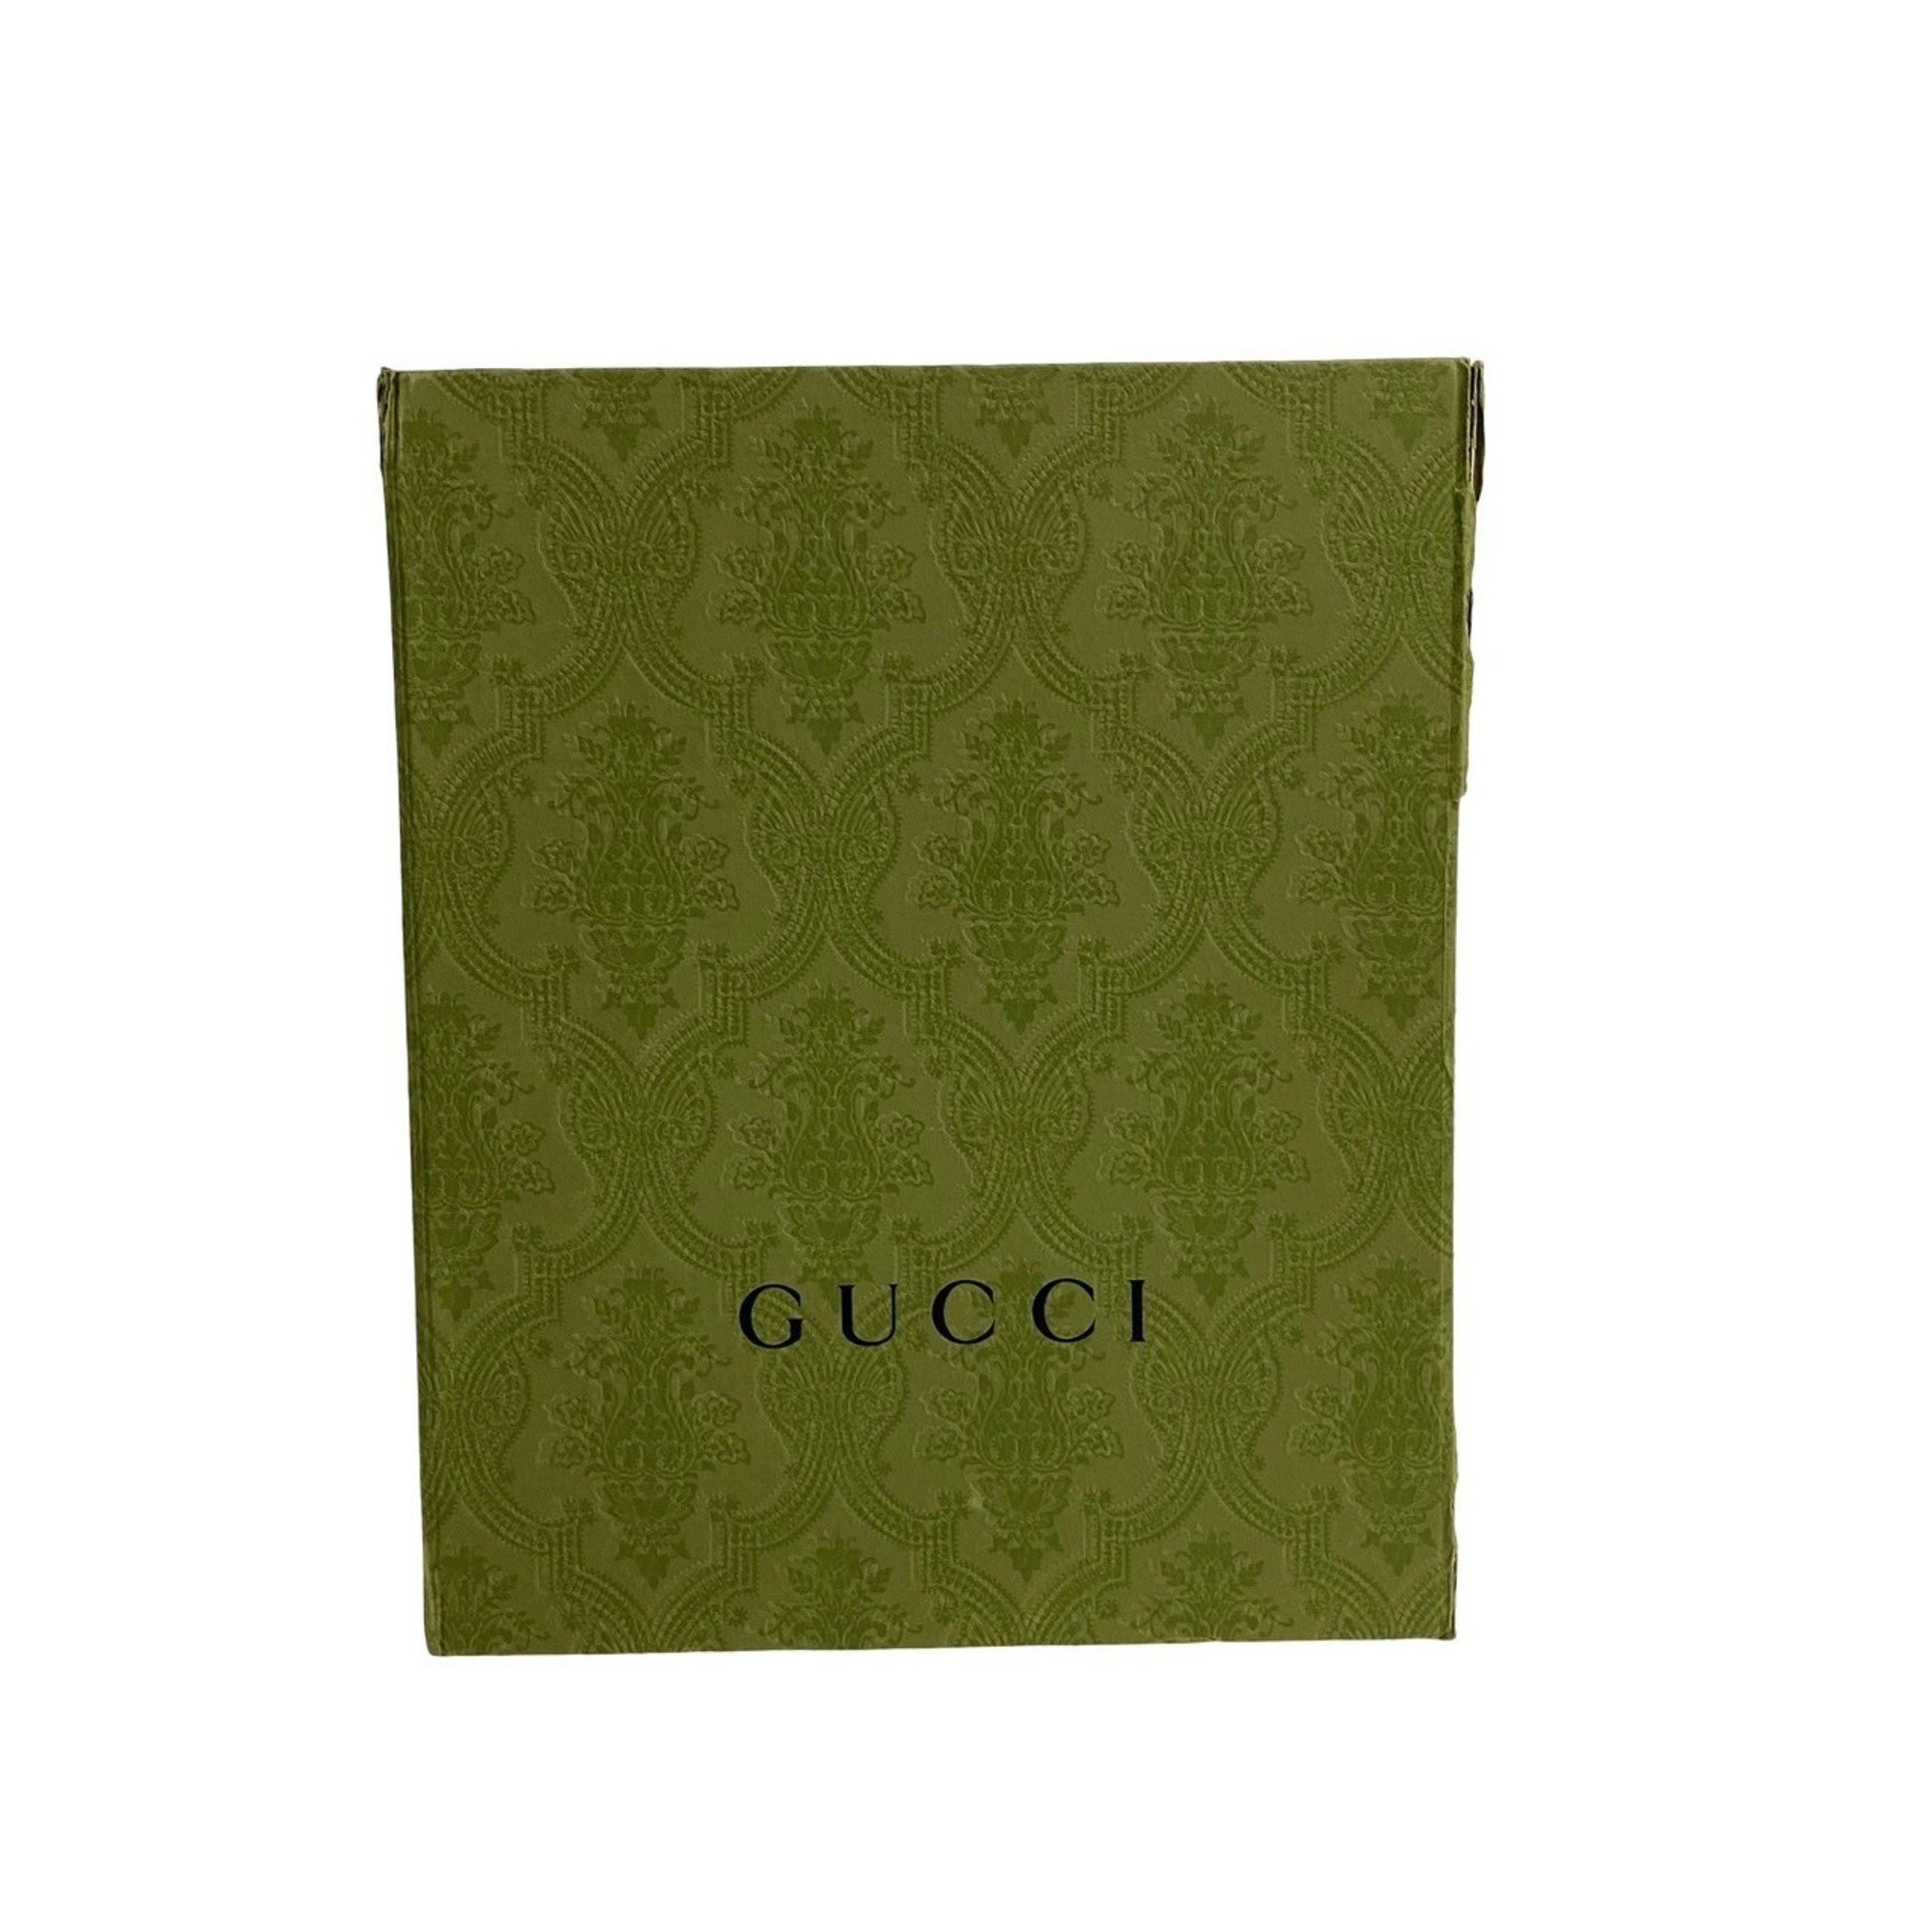 GUCCI Diana Tote Bamboo Leather 2way Handbag Shoulder Bag Green 26038